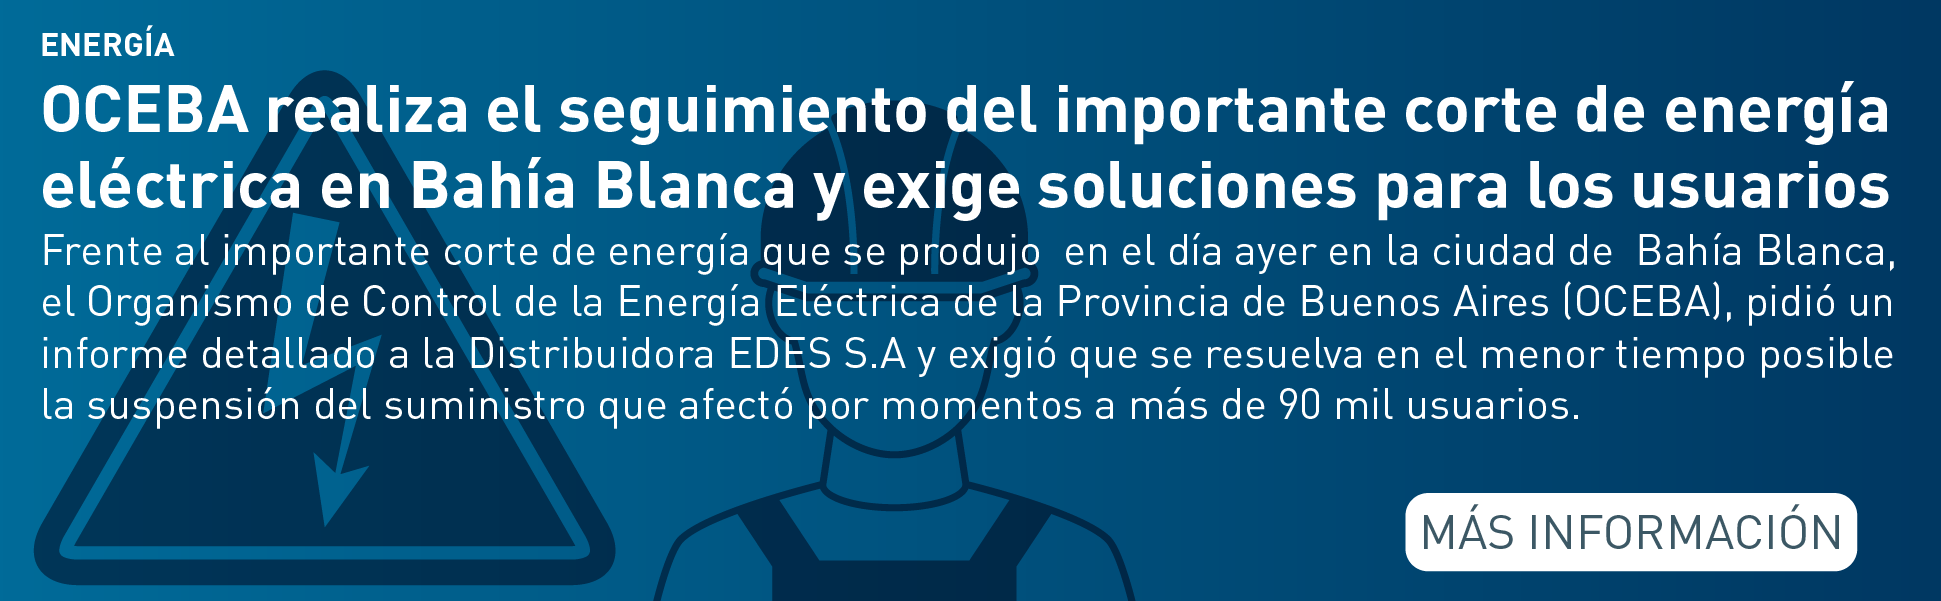 OCEBA realiza el seguimiento del importante corte de luz en Bahía Blanca y exige soluciones para los usuarios